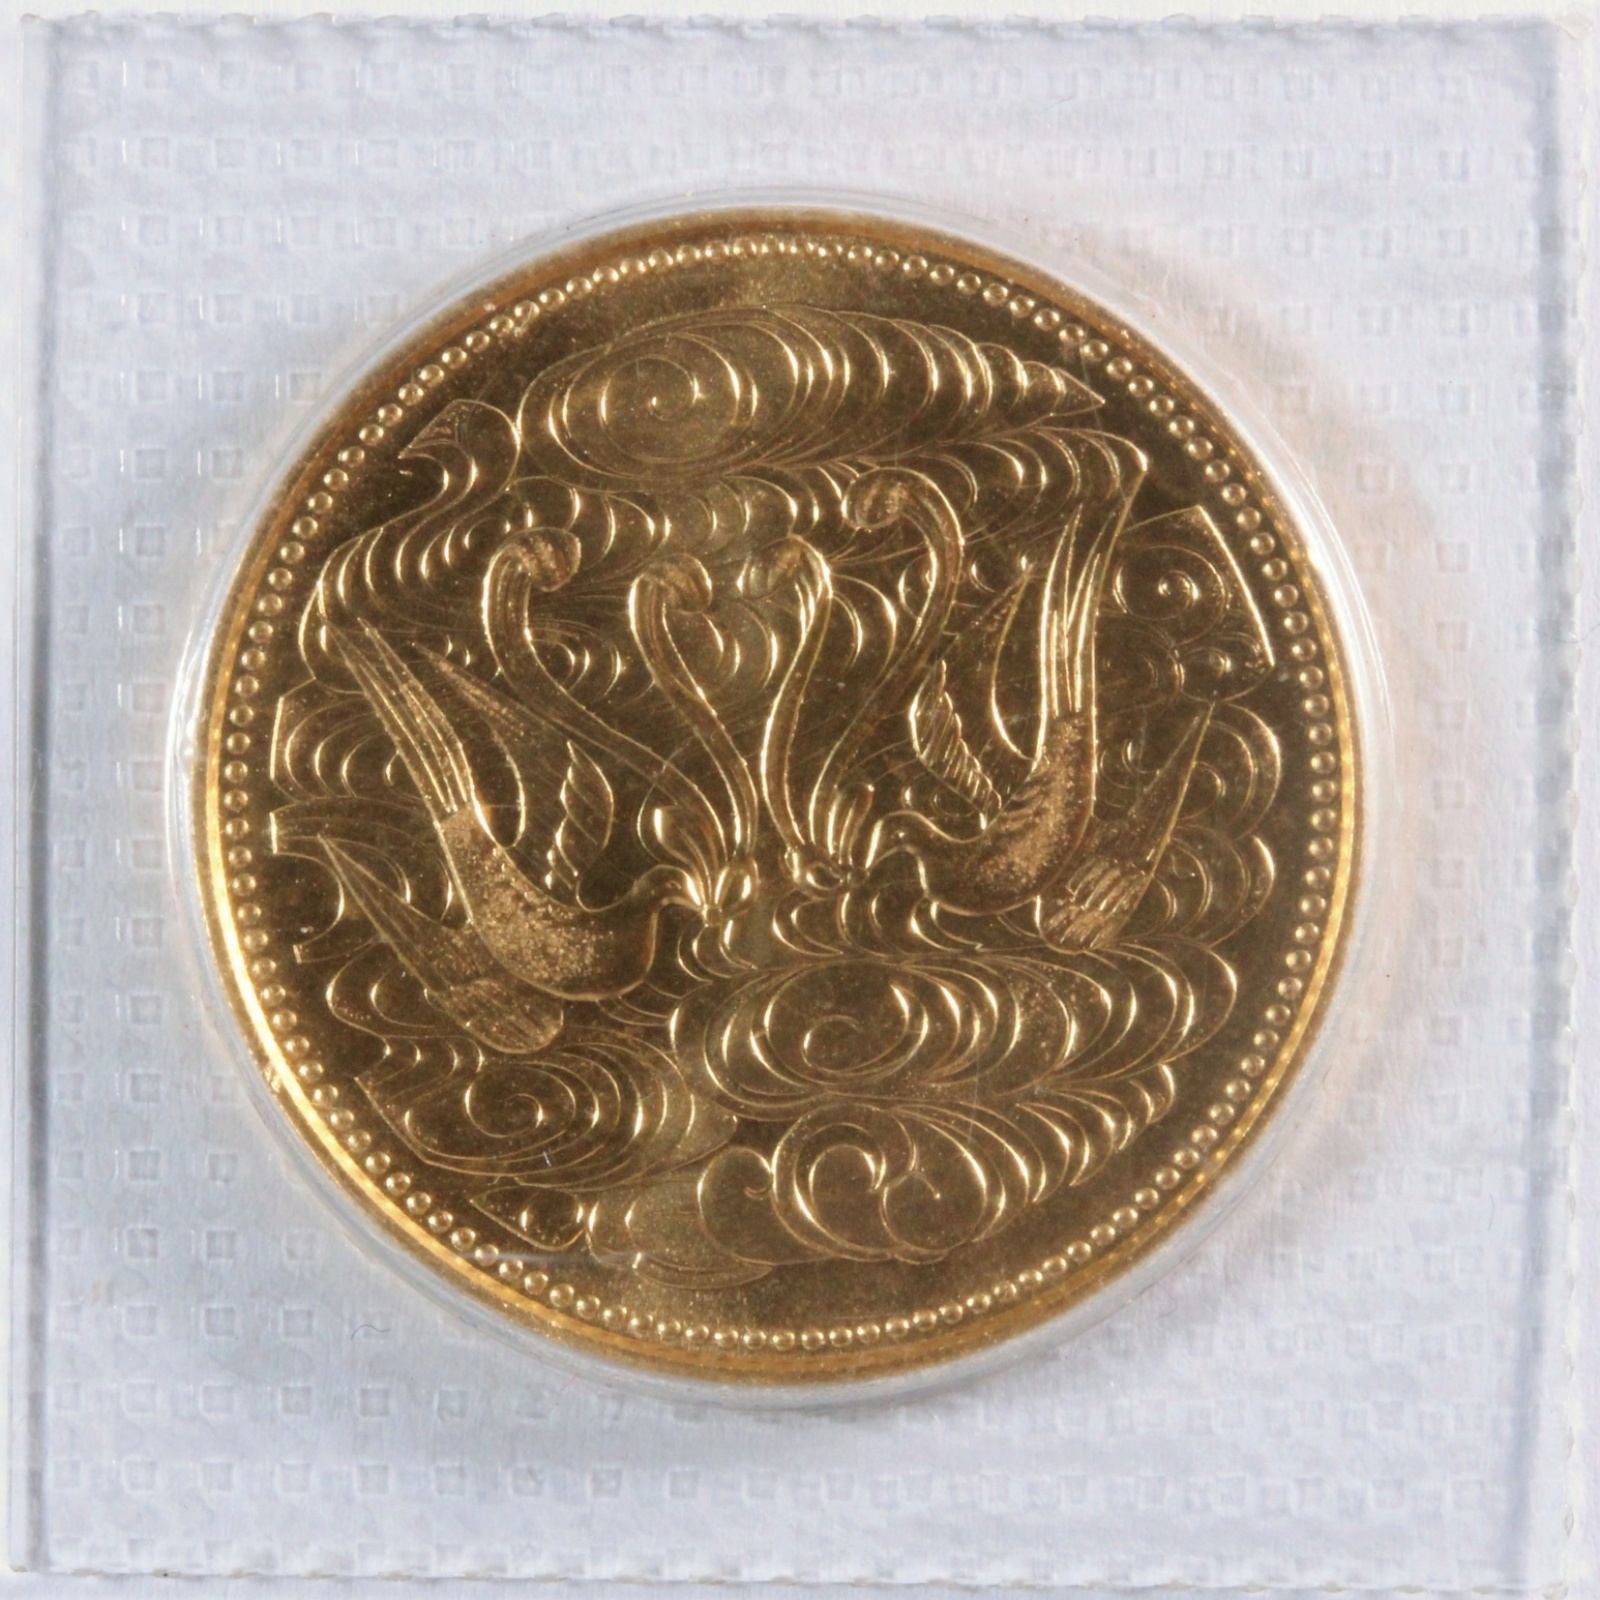 業界最安値】昭和天皇御在位60年記念10万円金貨 古銭 記念コイン 純金 